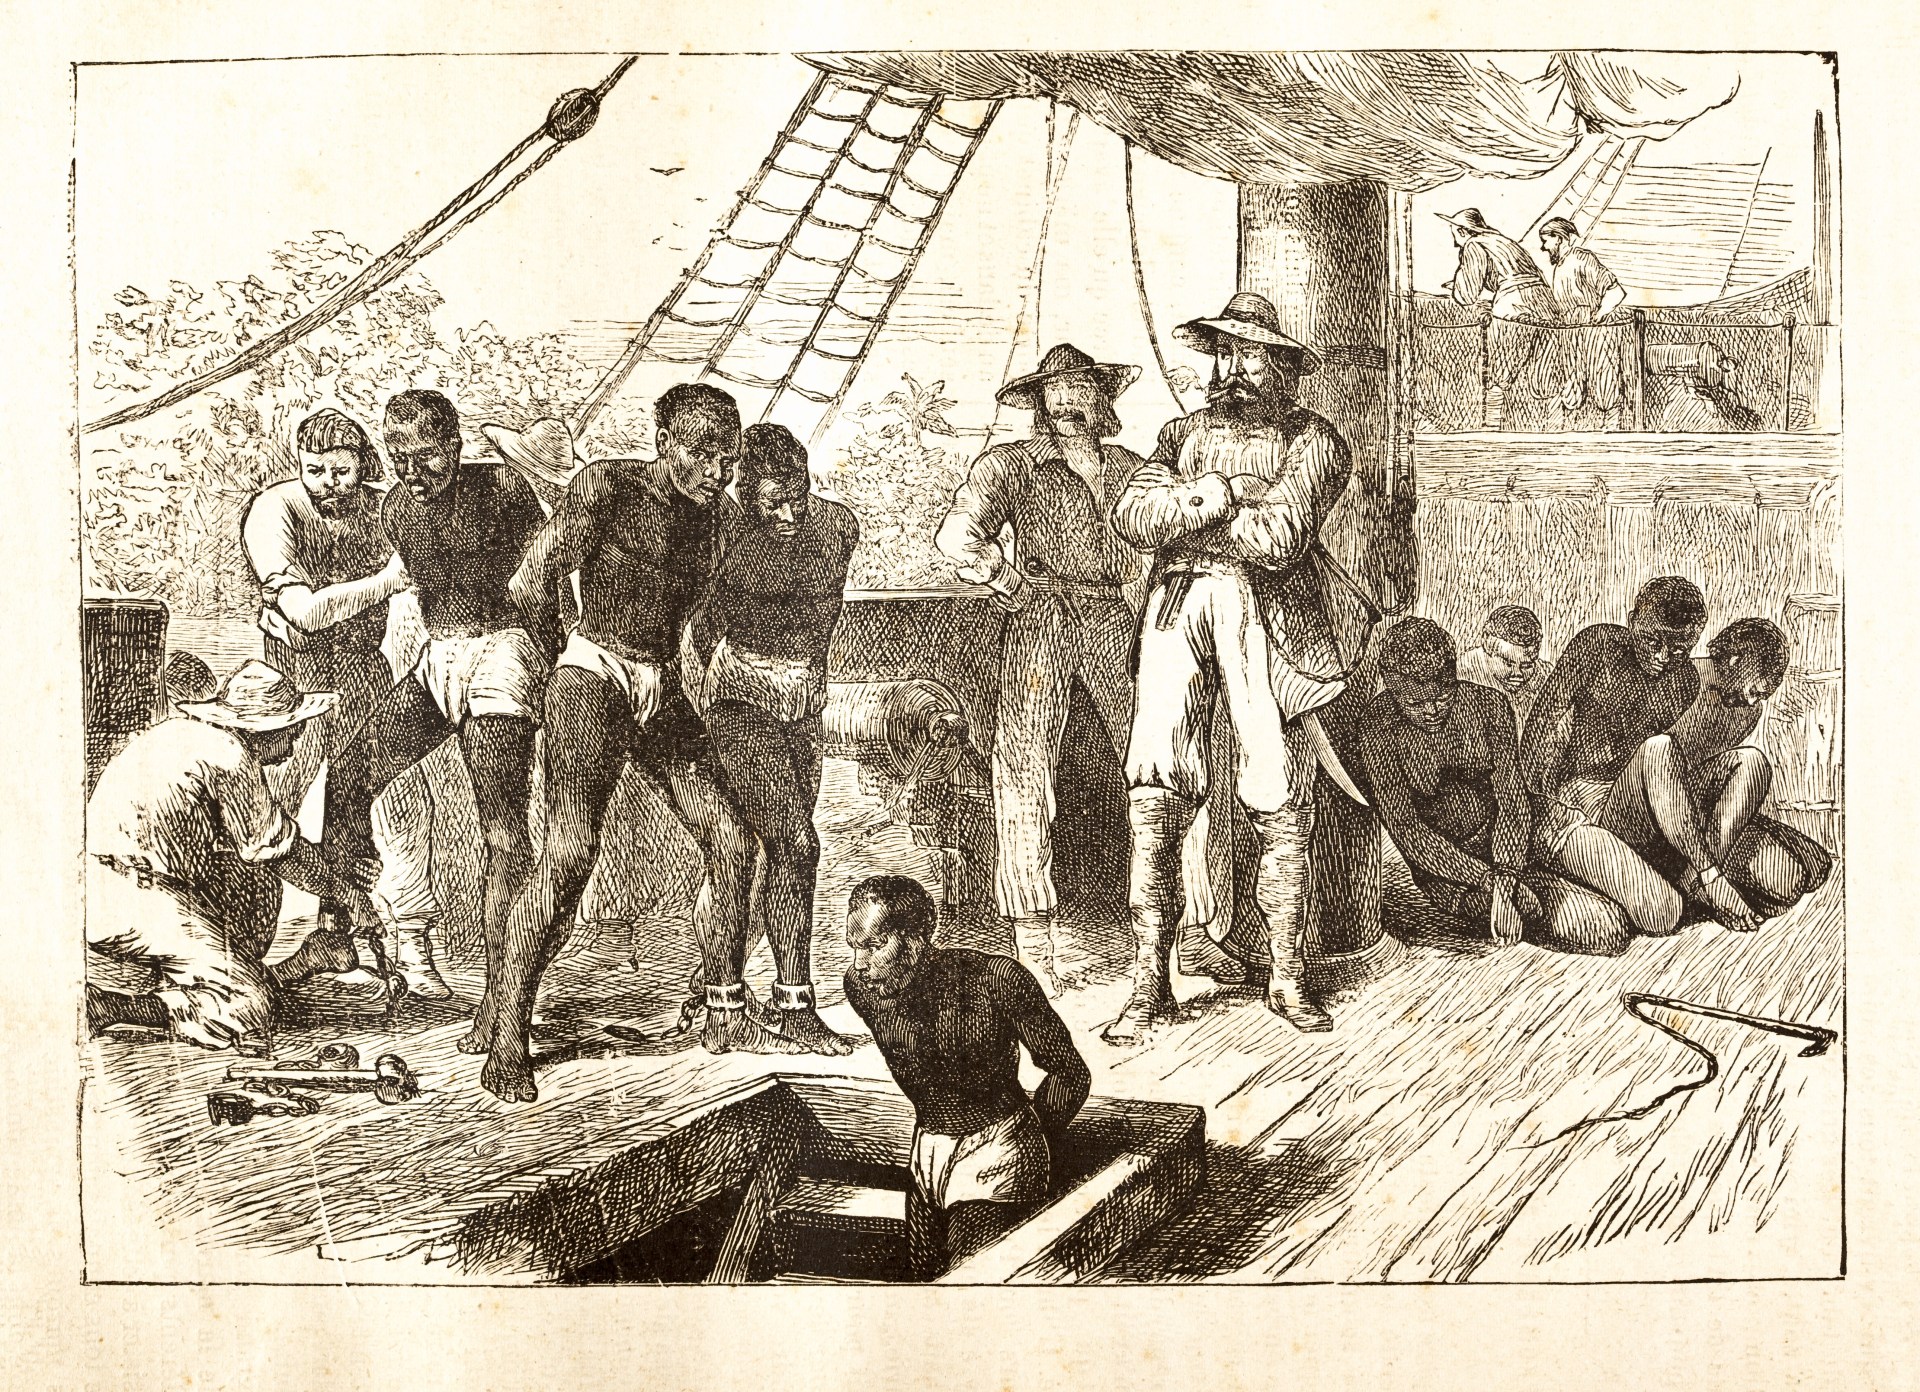 Black slaves loaded on ship 1881